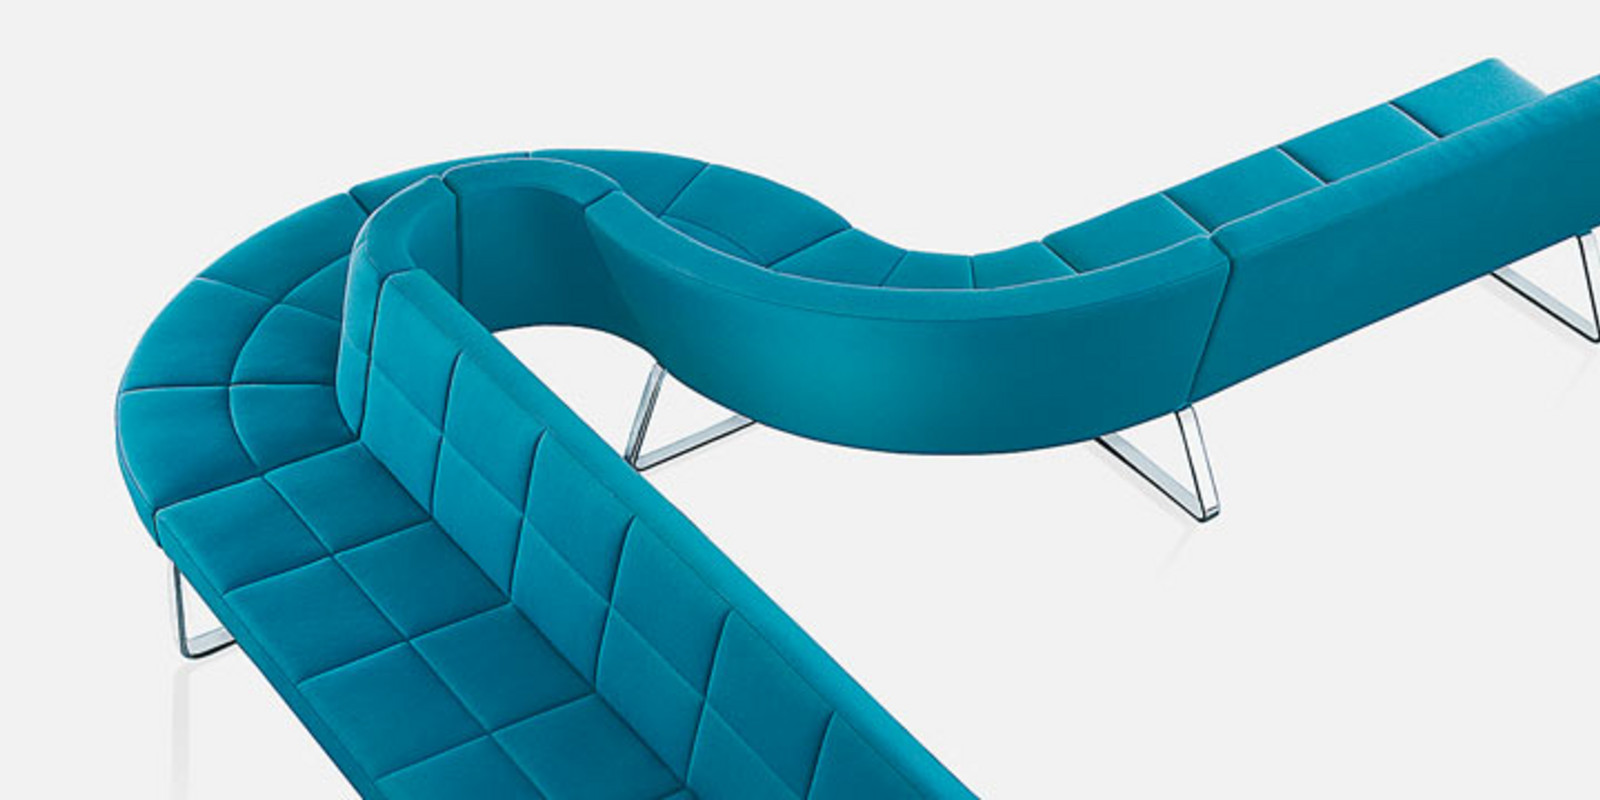 Brunner - Stühle aus hochwertigem Kunststoff, farbenfroh und pflegeleicht Bild 8